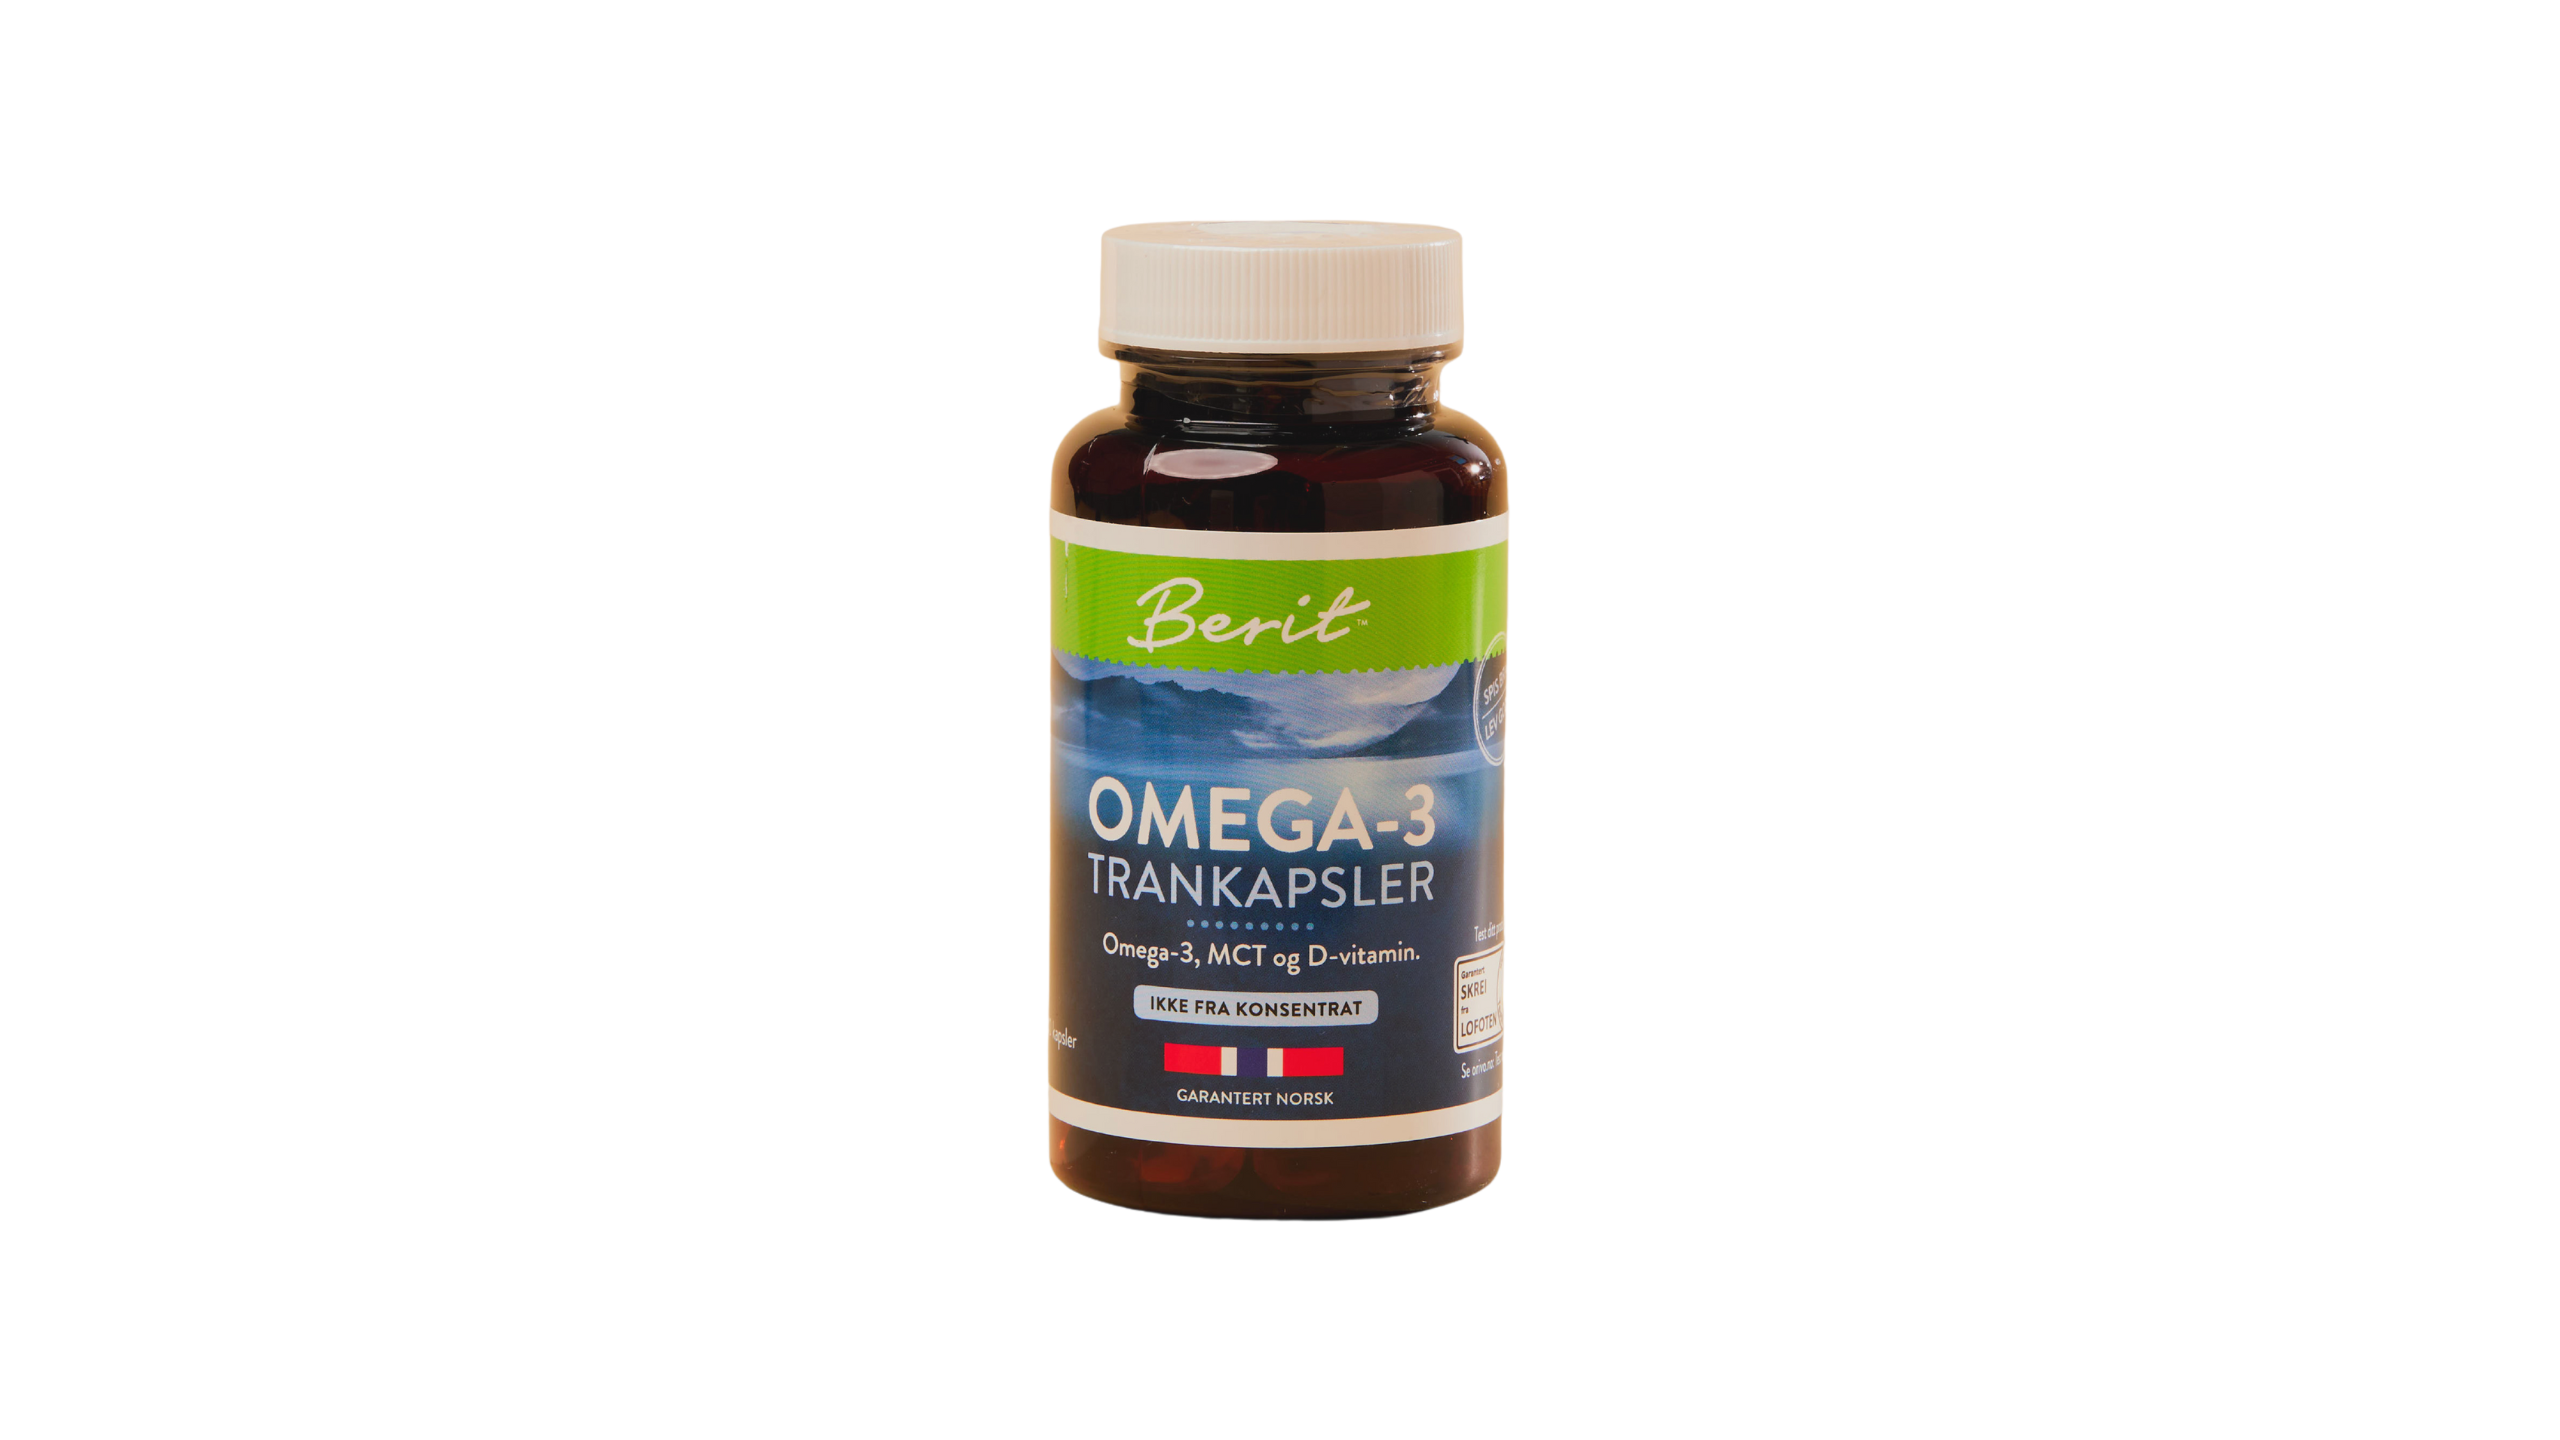 Omega-3 trankapsler